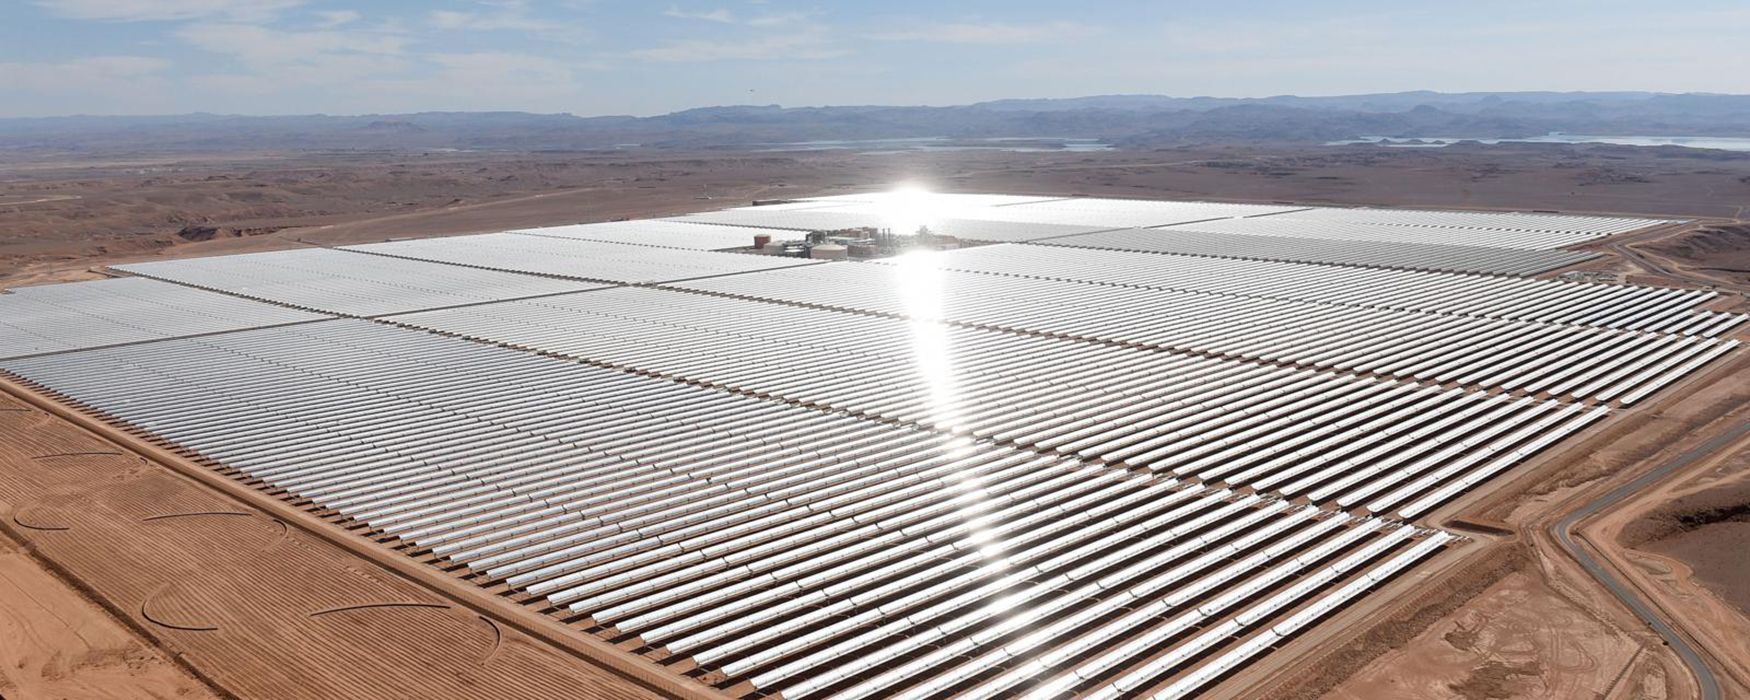 Найбільша в Африці сонячна електростанція побудована: на що вона здатна – відео